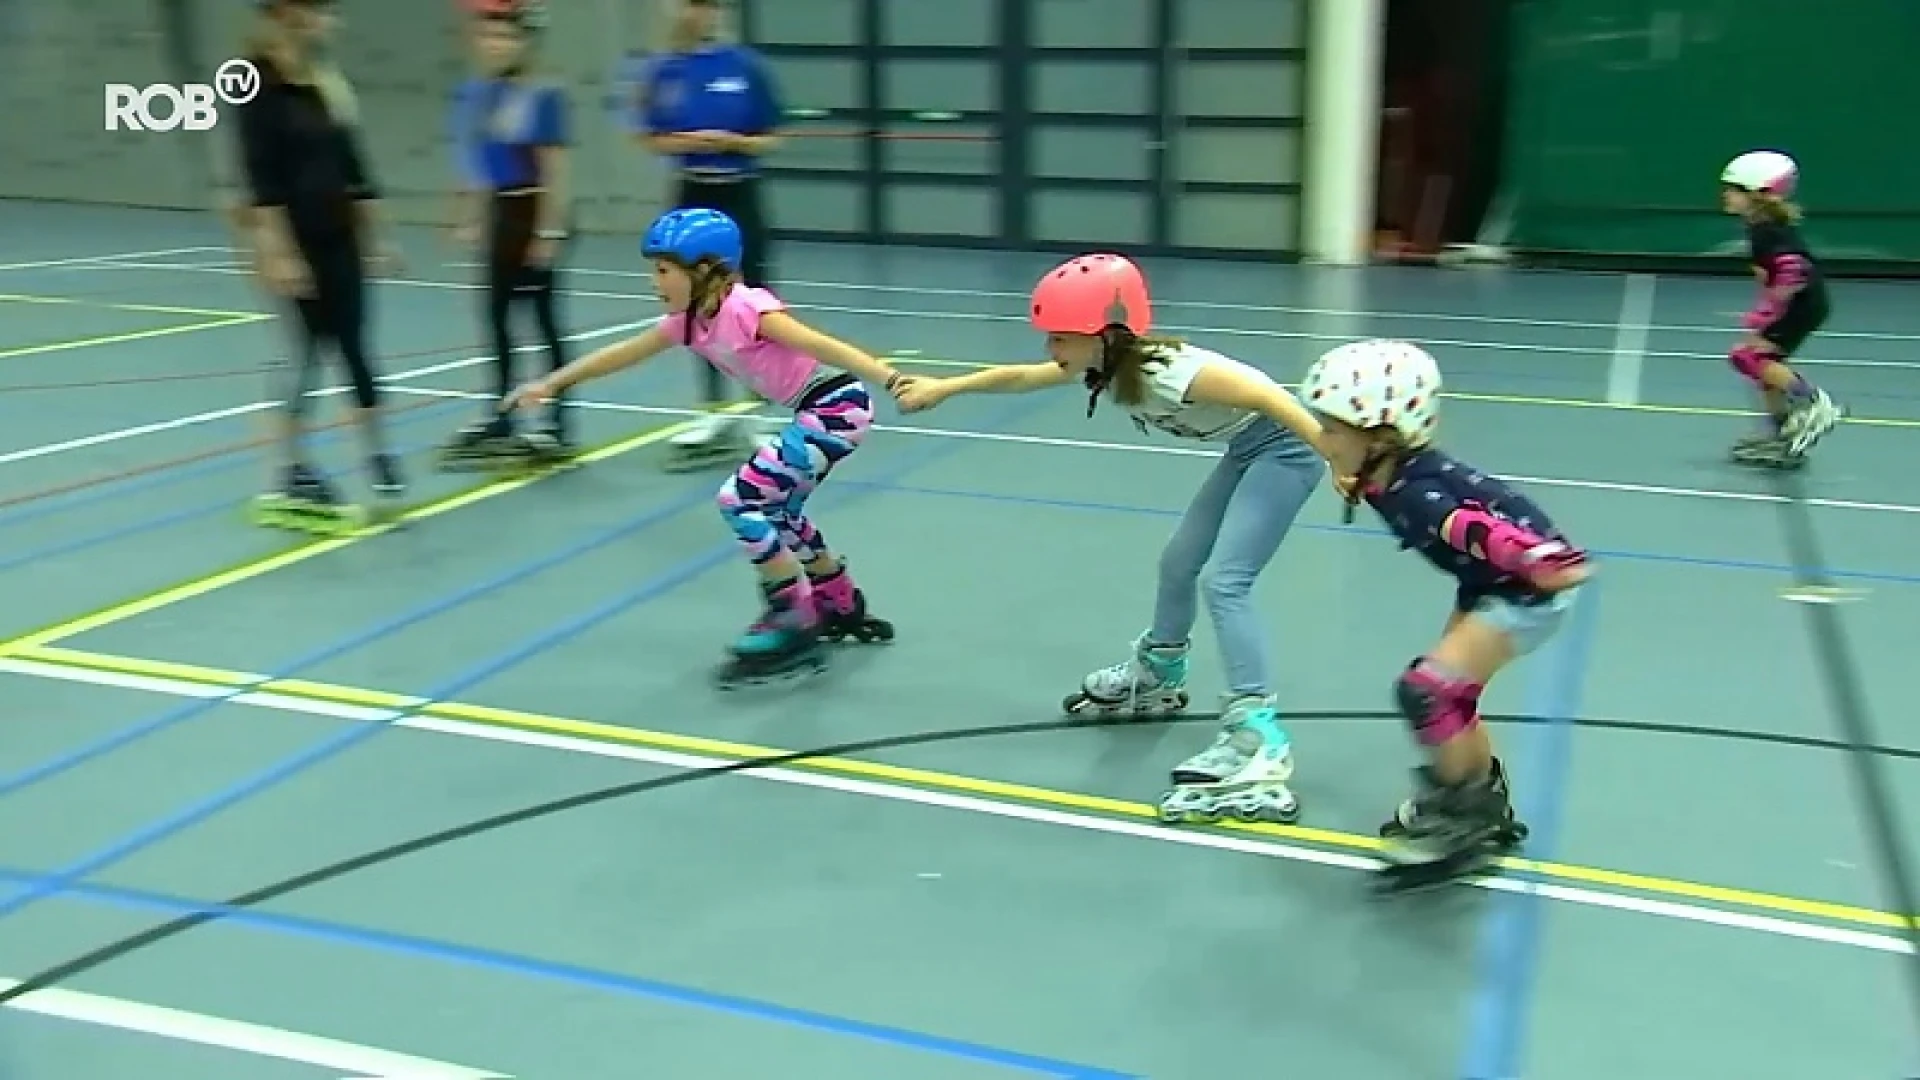 Rolschaatsclub Tienen organiseert skeelerkamp voor kinderen